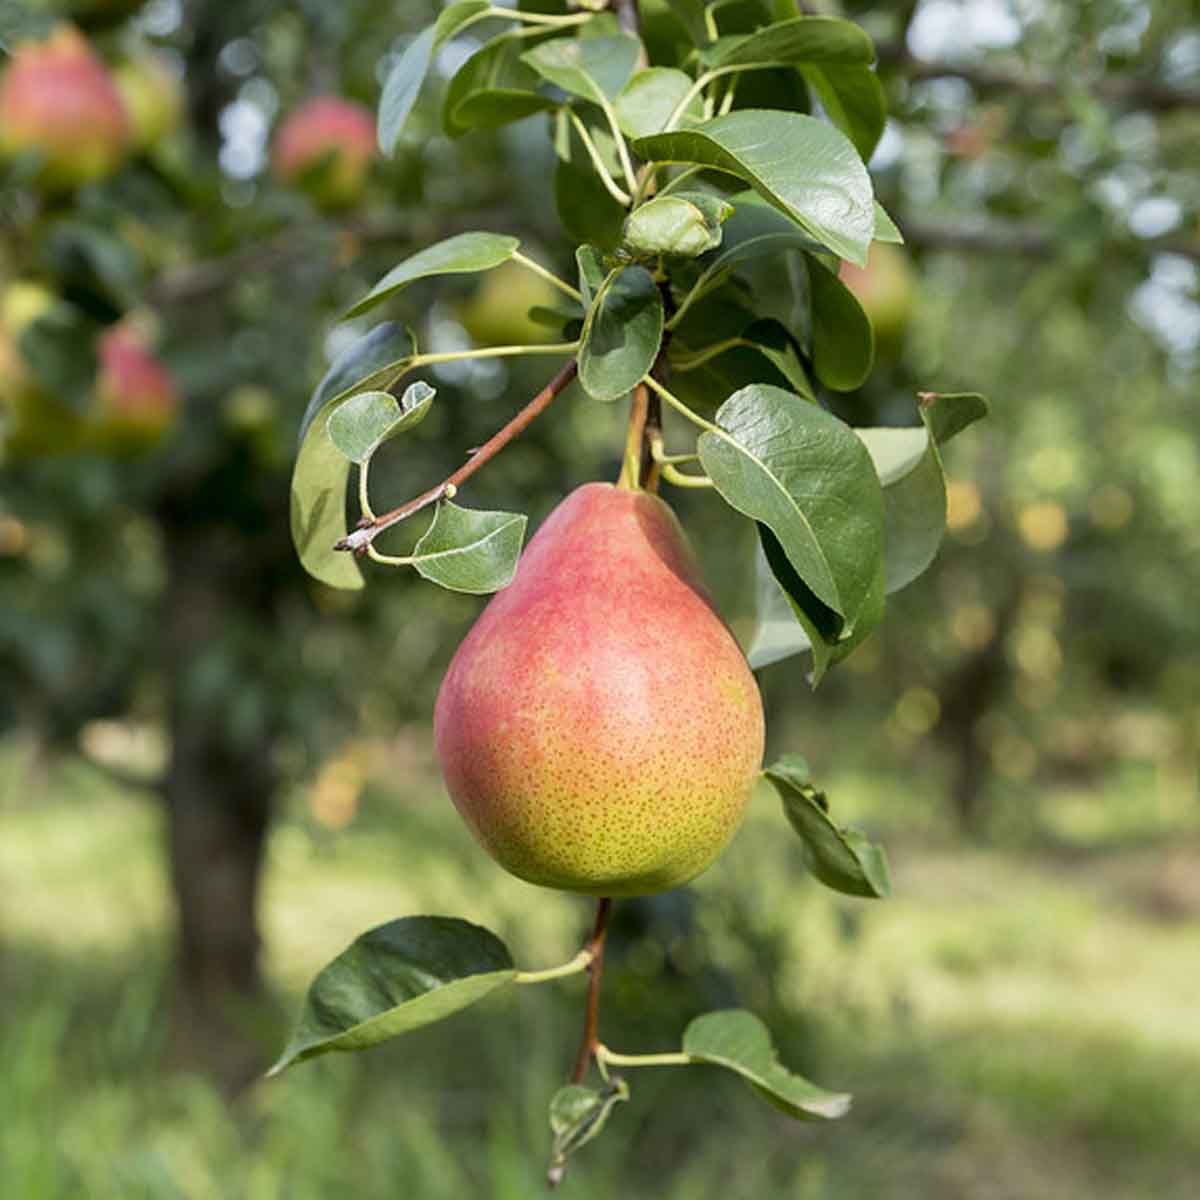 A pear tree